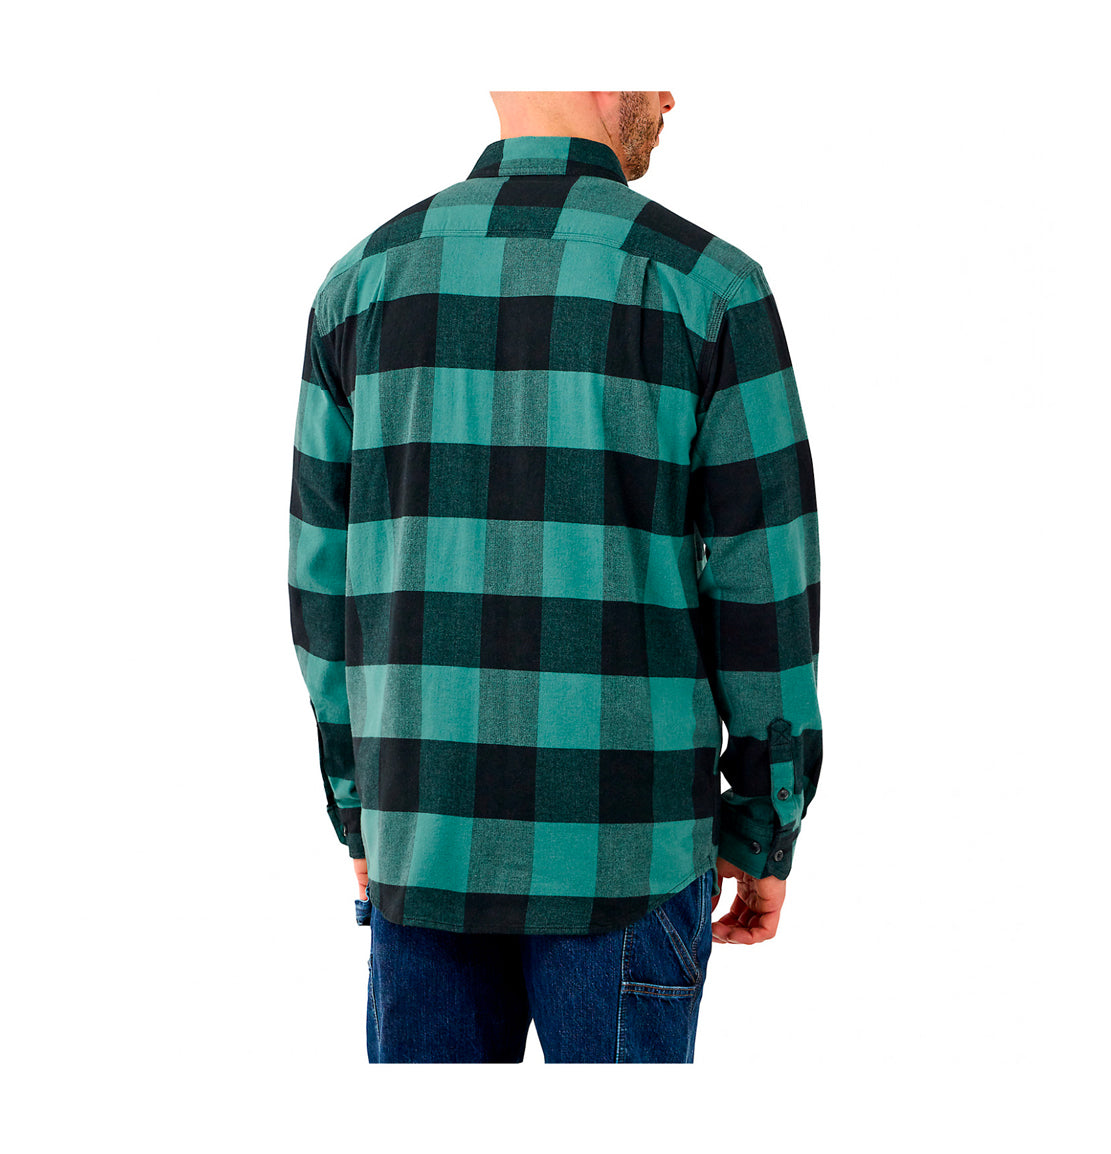 Carhartt flannel shirt leicester